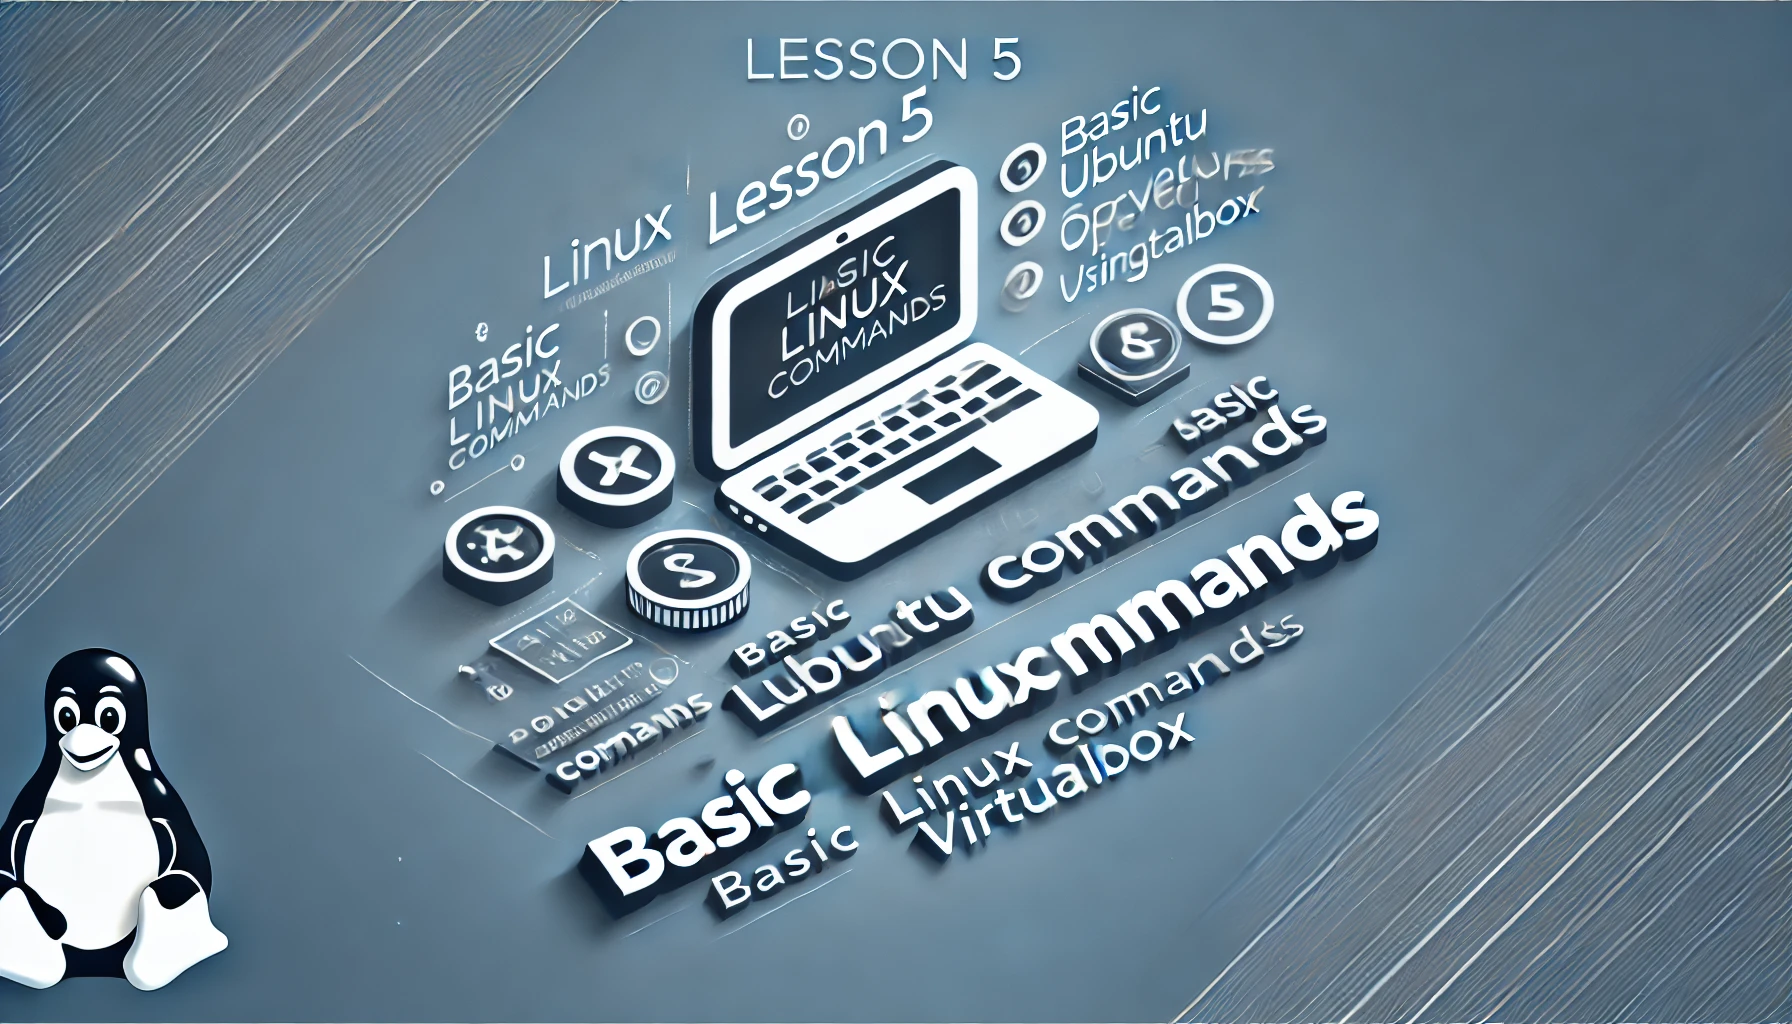 Lesson 6 - Basic Linux Commands